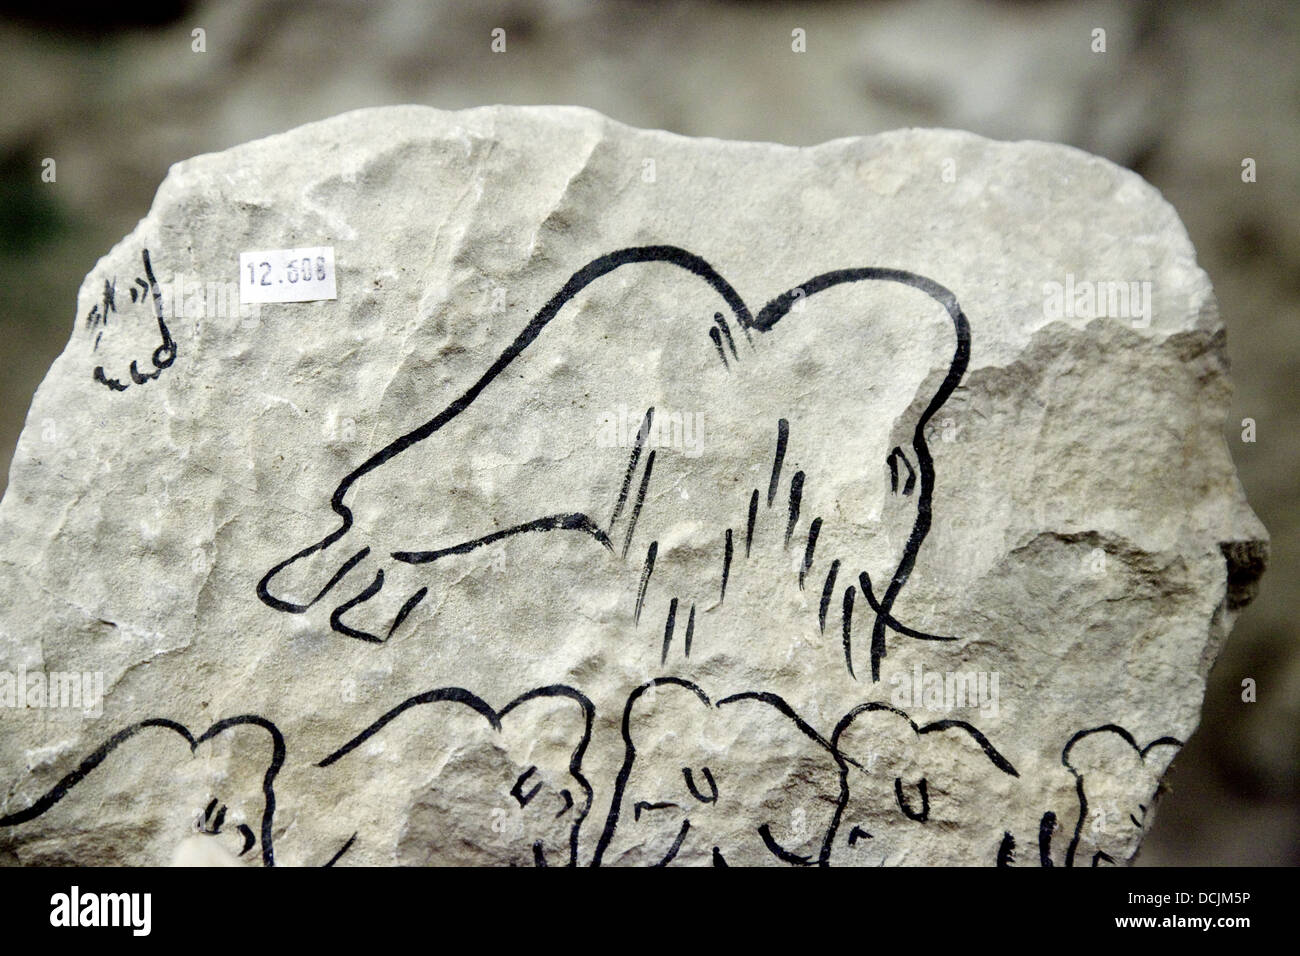 Peinture préhistorique cadeaux réplique dans la boutique de la Grotte de Rouffignac ( Rouffinac Cave ), perigord, dordogne, France Europe Banque D'Images